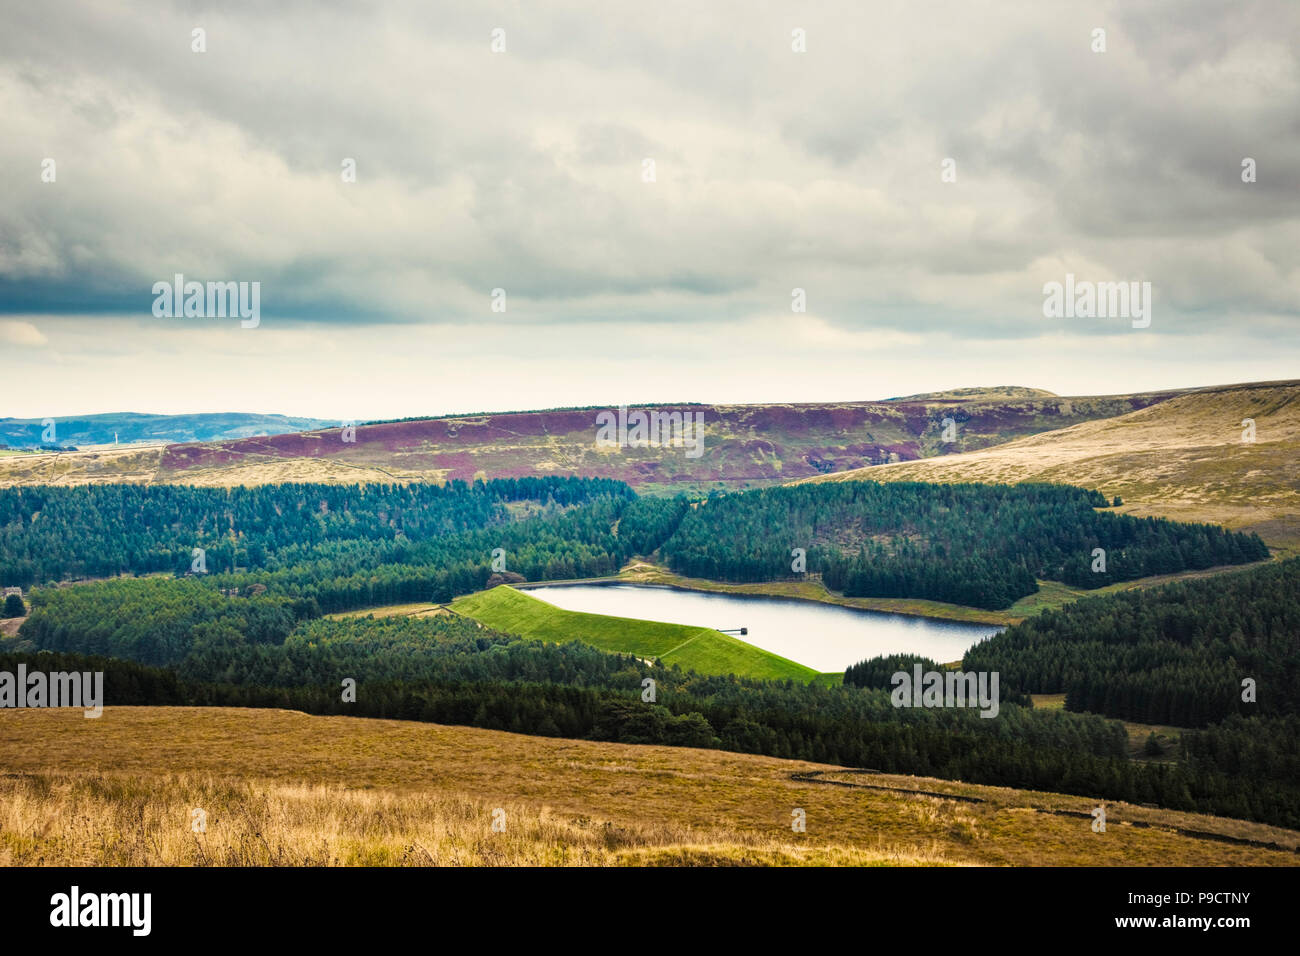 Réservoir d'Yateholme, Kirklees, West Yorkshire Moors et le paysage du parc national de Peak District, England, UK Banque D'Images